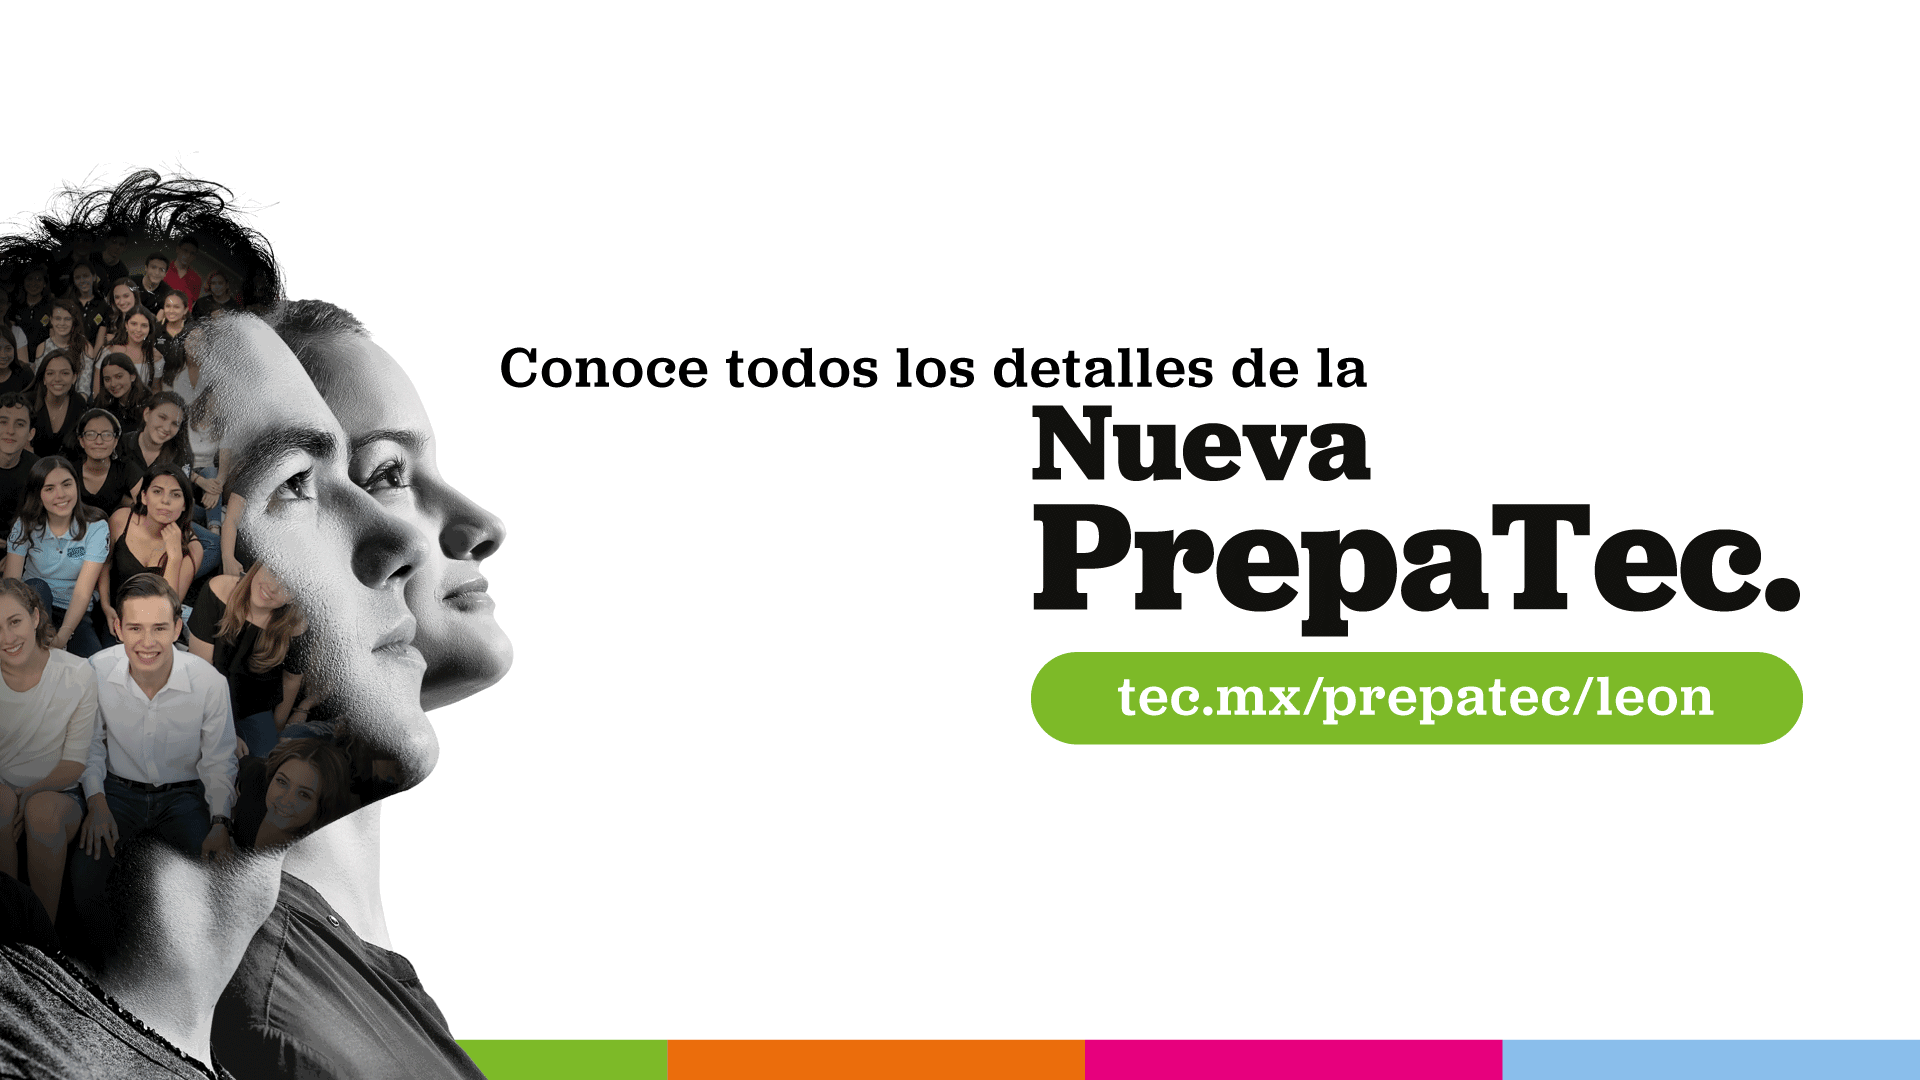 Da click y conoce todos los detalles, sobre la nueva PrepaTec del Tec de Monterrey en León